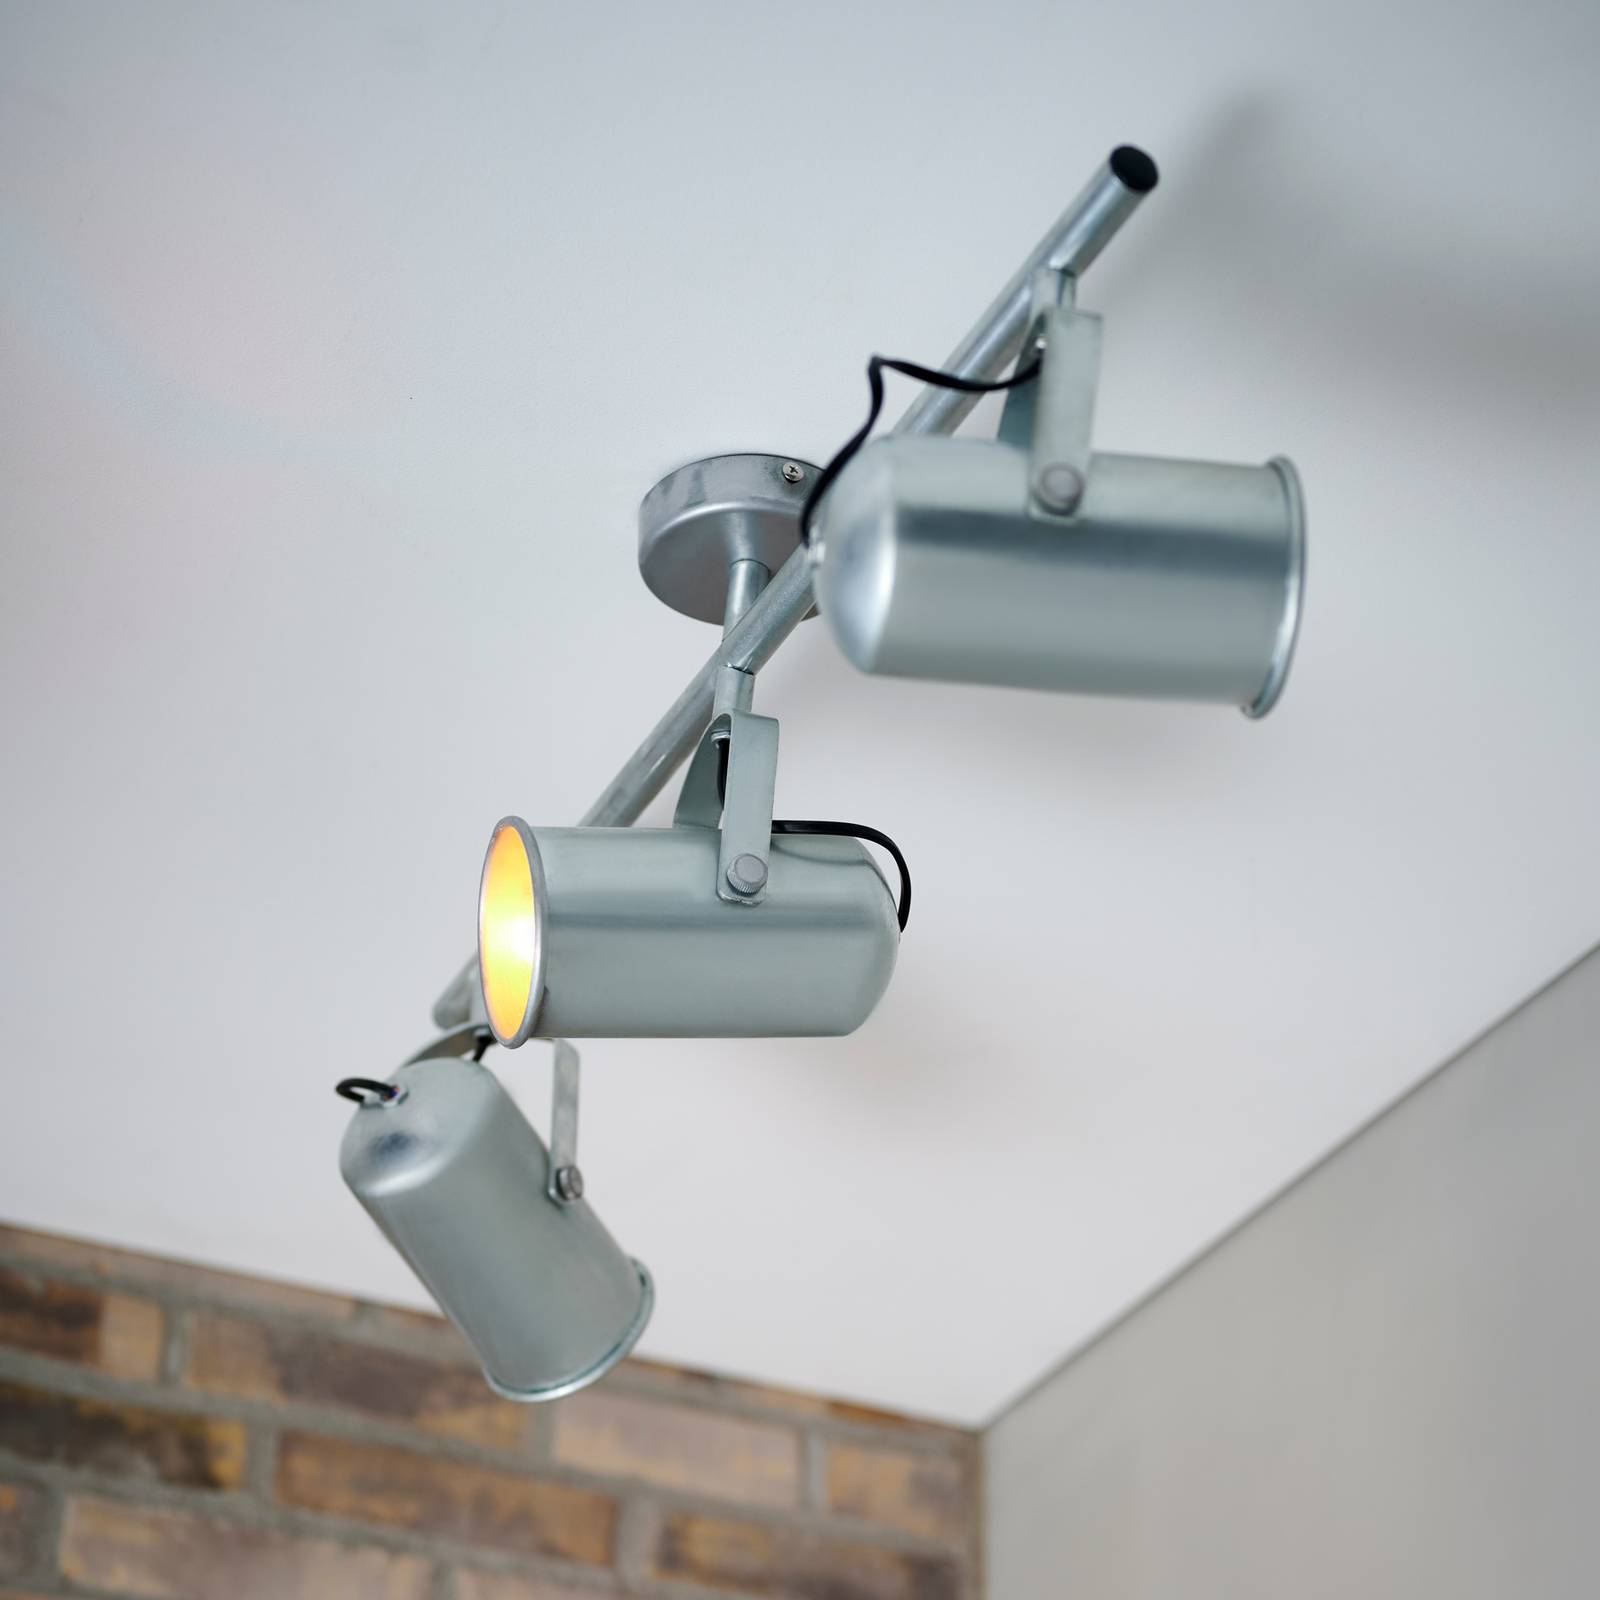 Nordlux Porter taklampa i industriell look med 3 spotlights